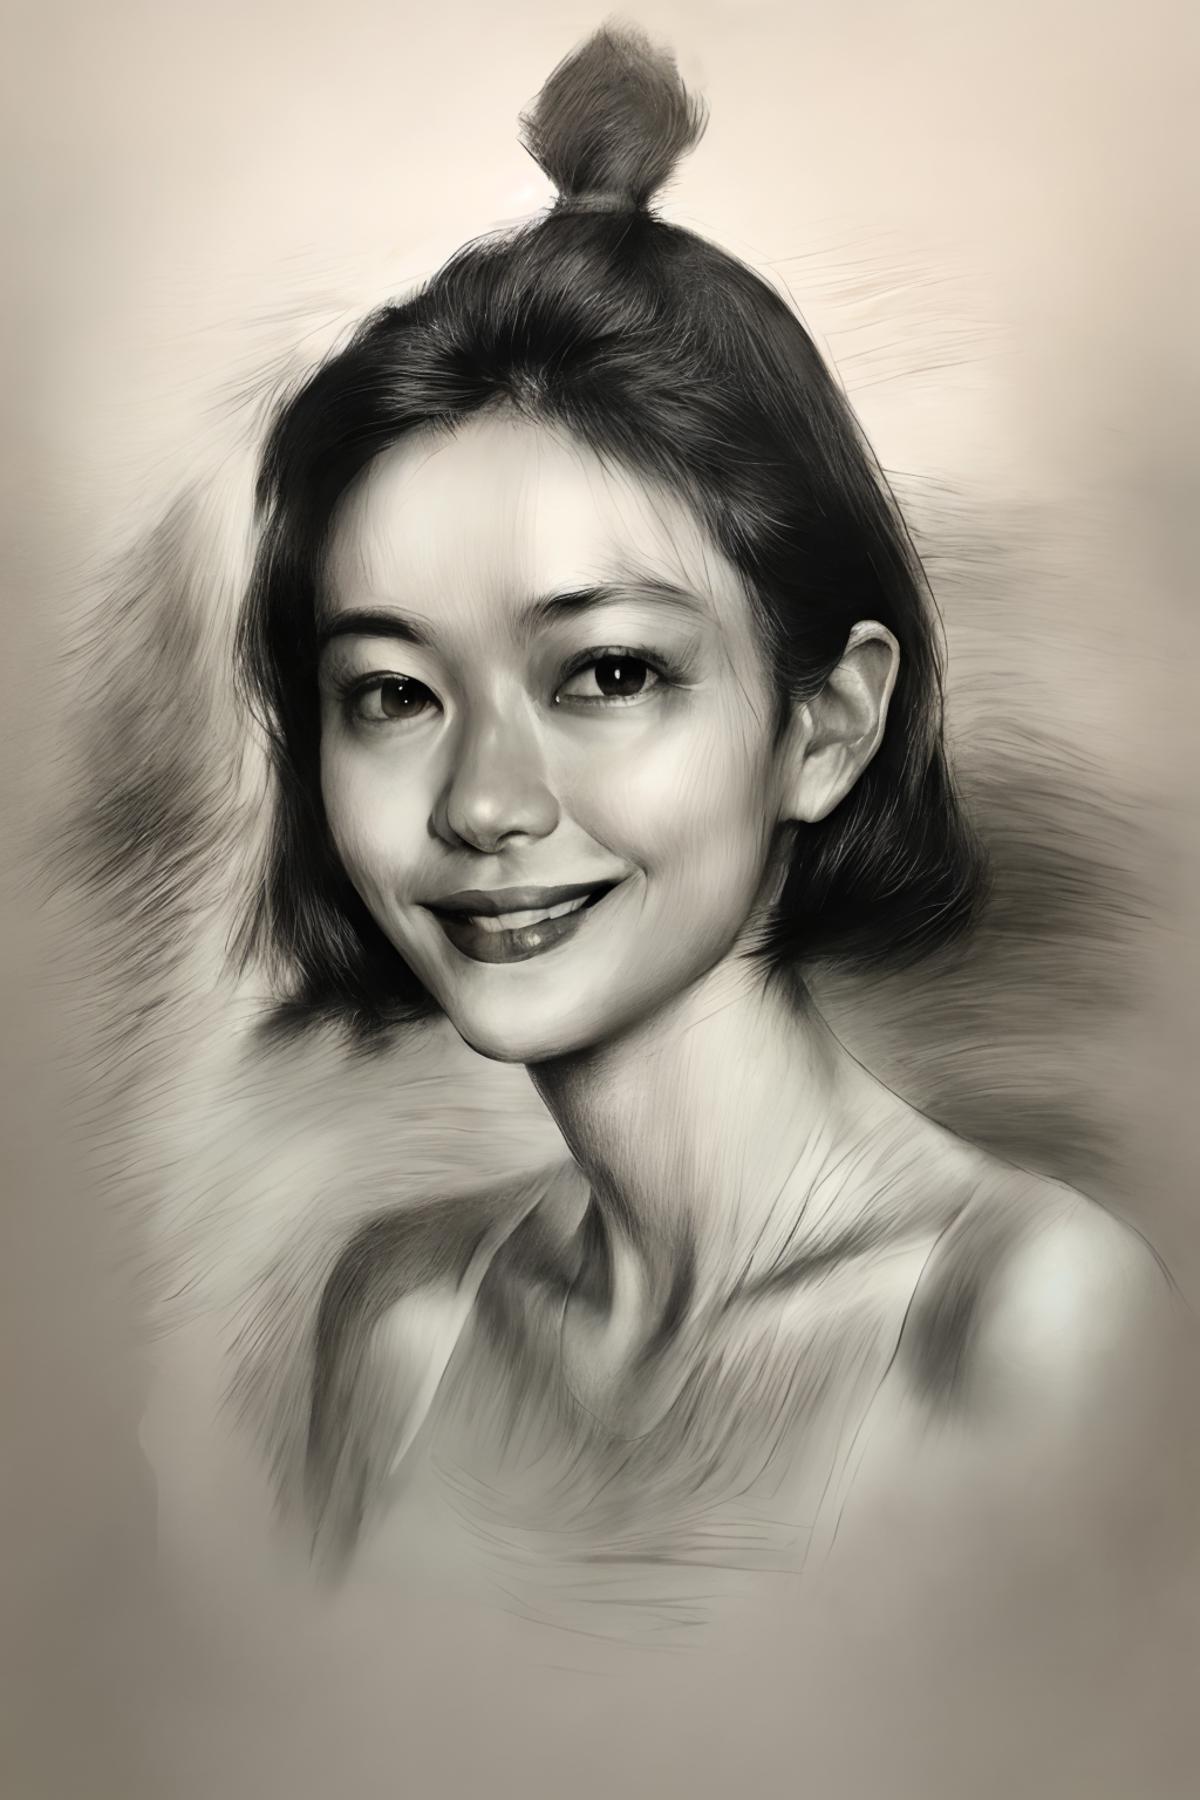 素描-sketch-pencil image by huachengzhao